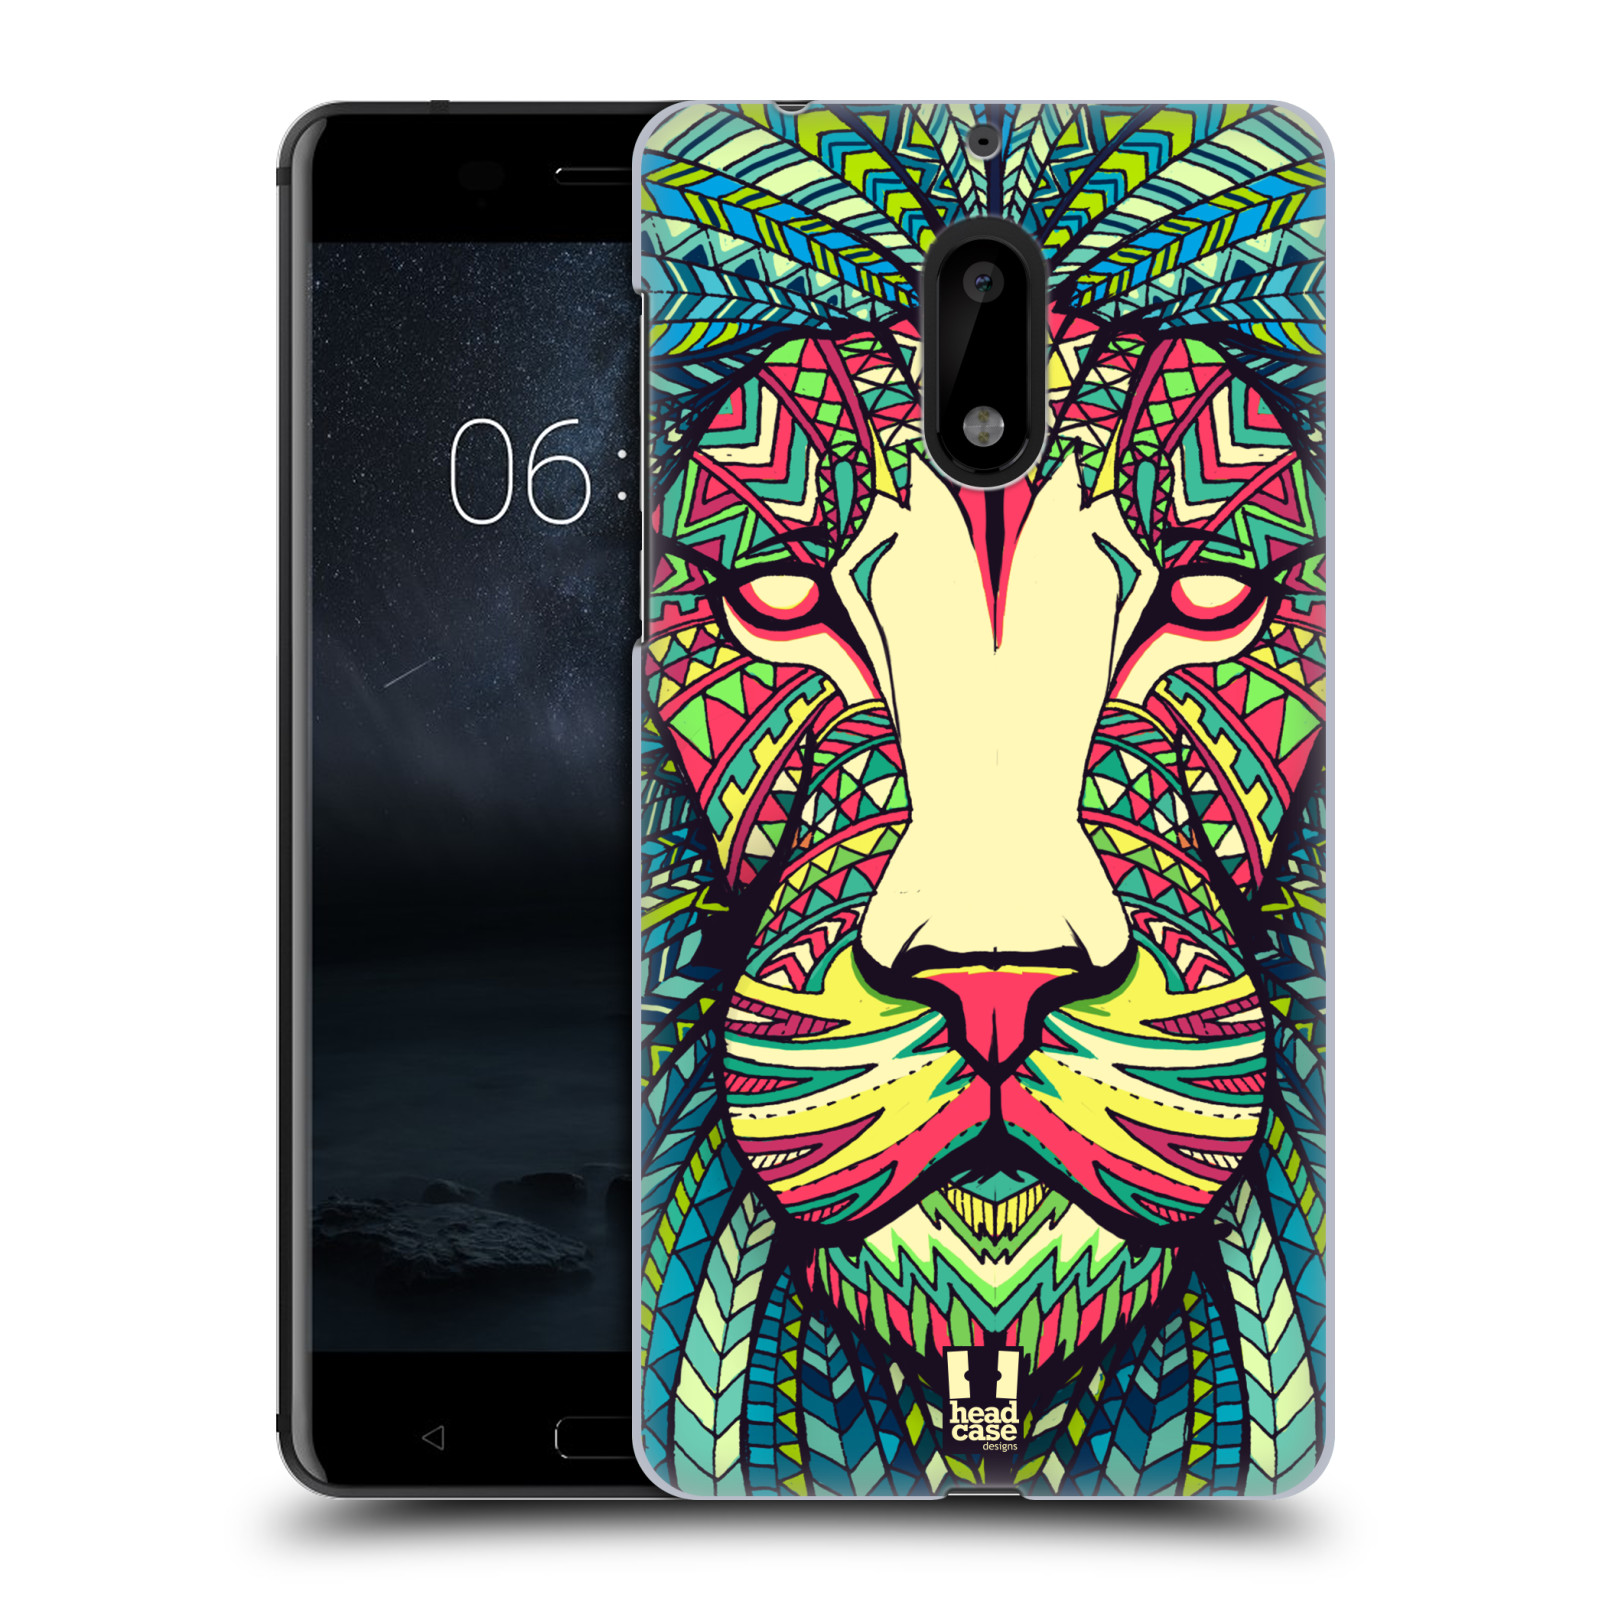 HEAD CASE plastový obal na mobil Nokia 6 vzor Aztécký motiv zvíře lev